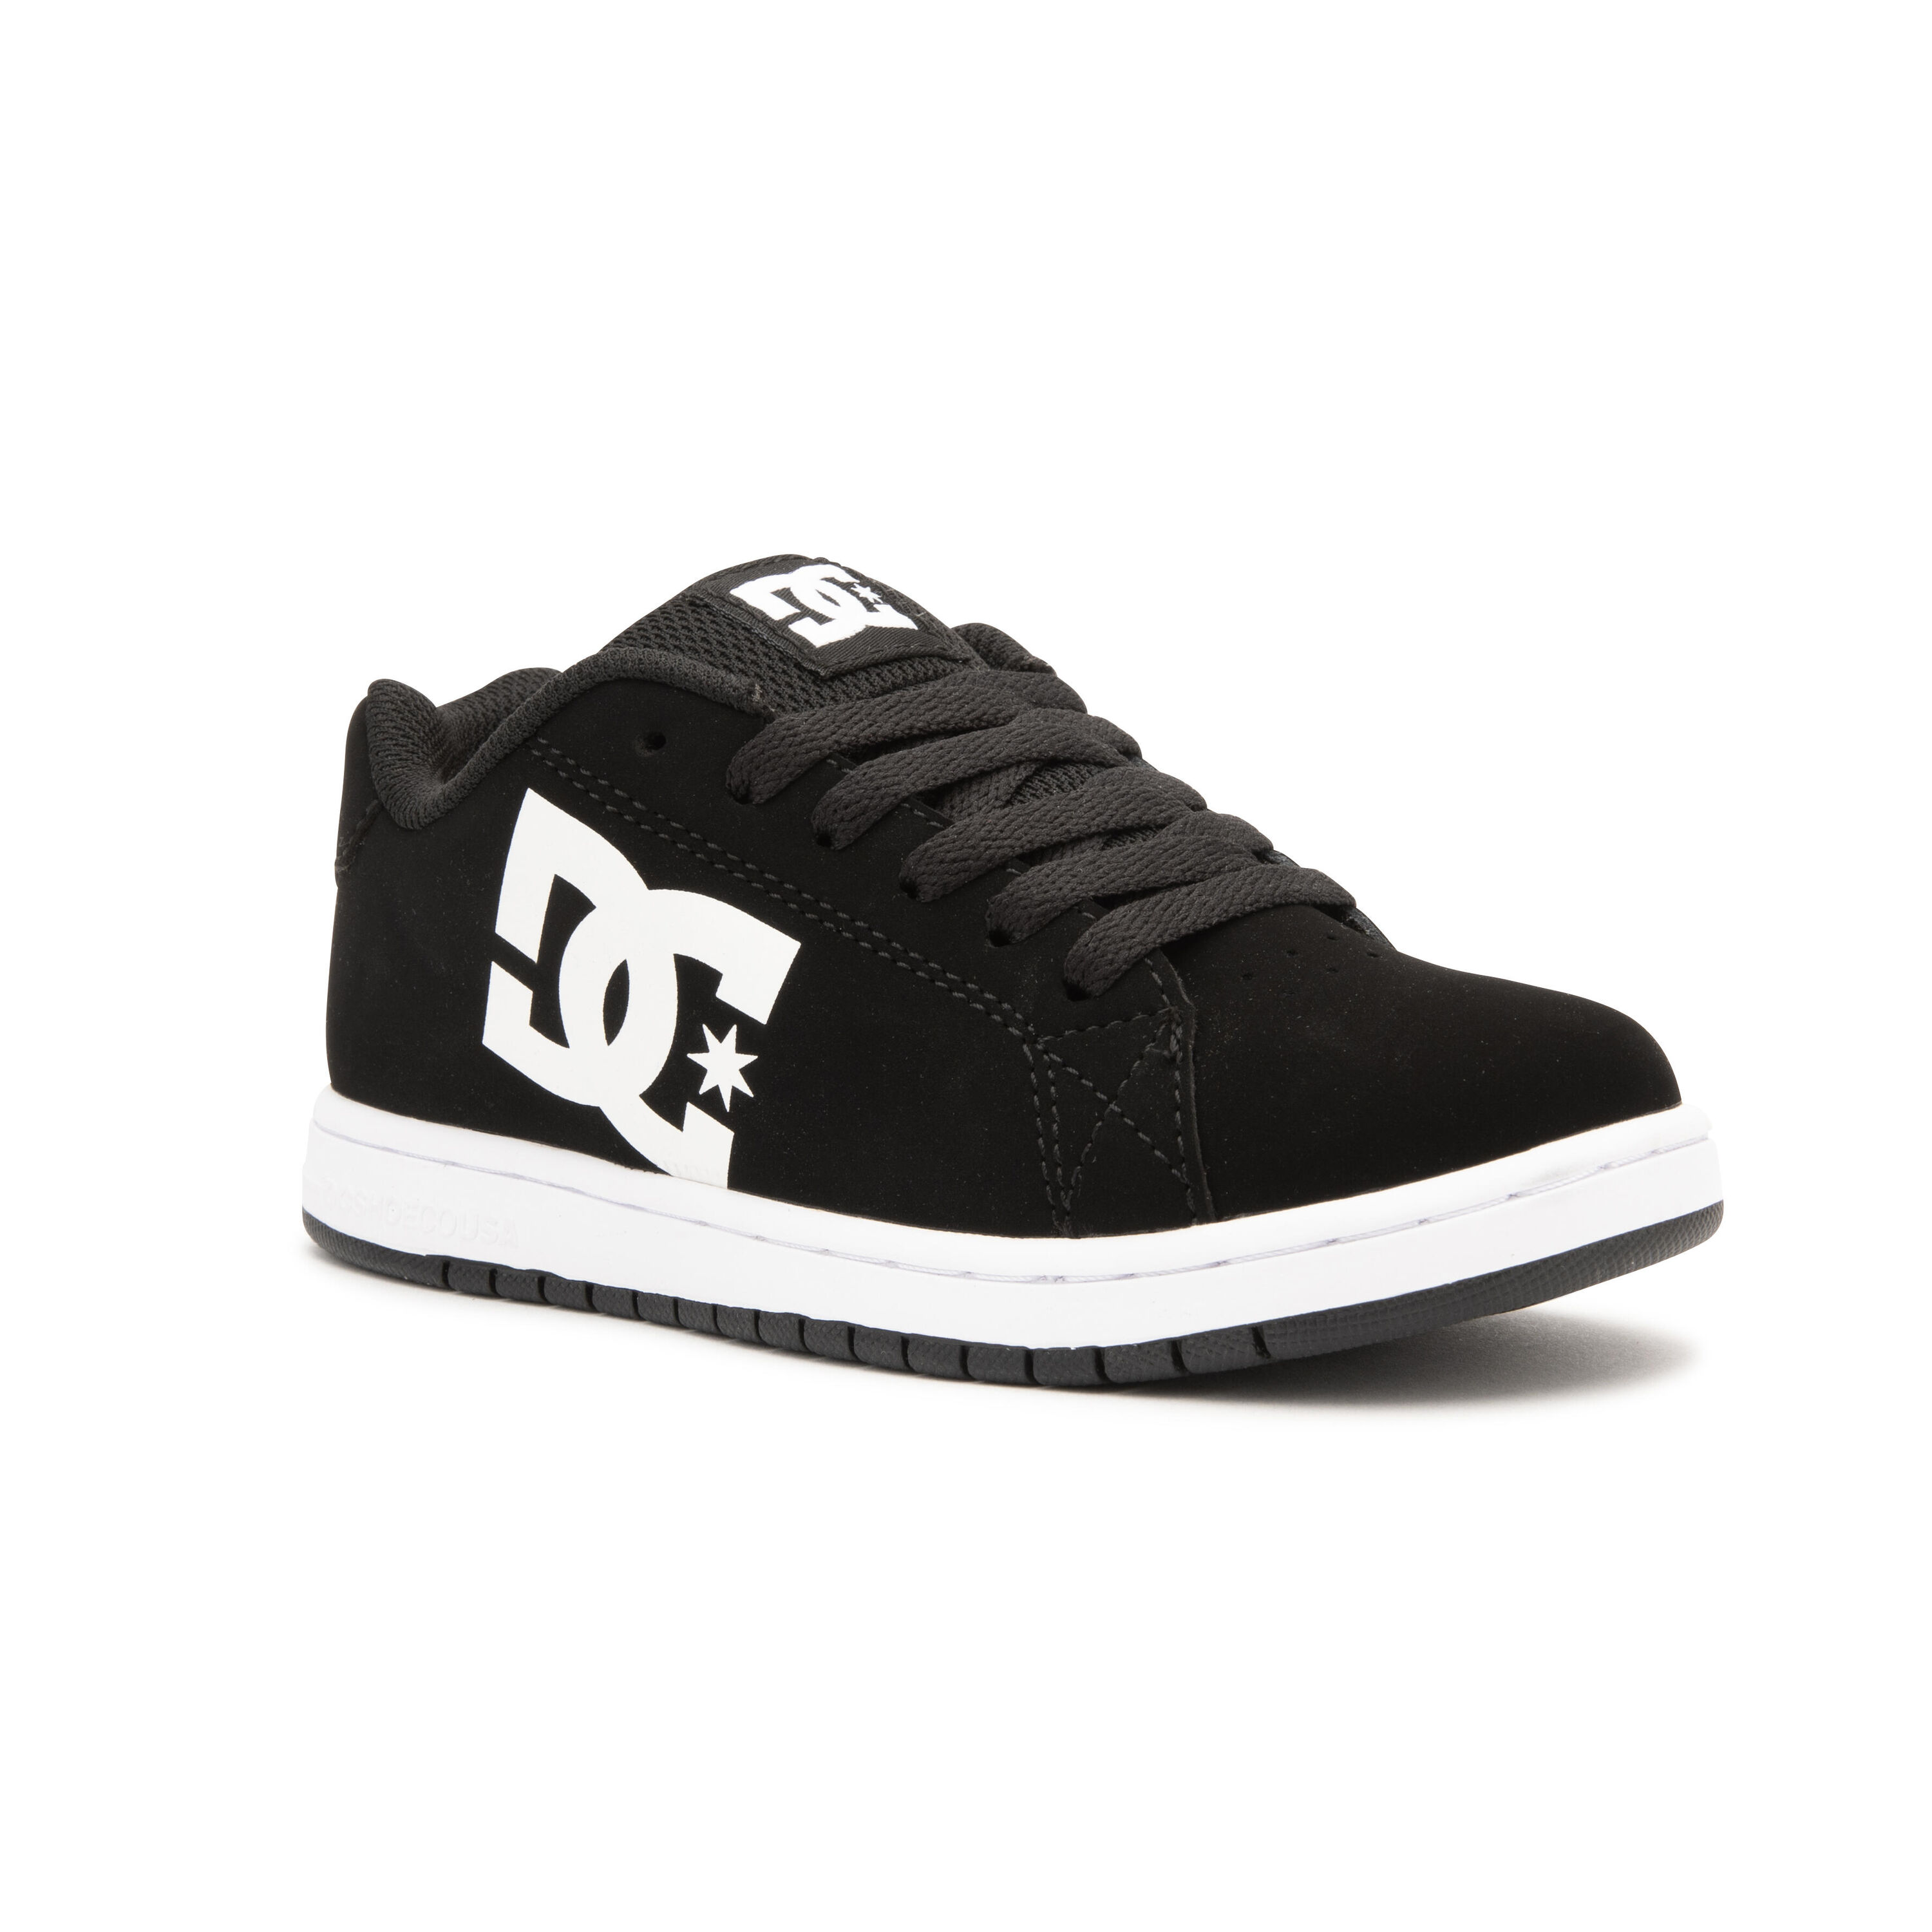 DC SHOES Kids' Skateboarding Shoes Gaveler - Black/White